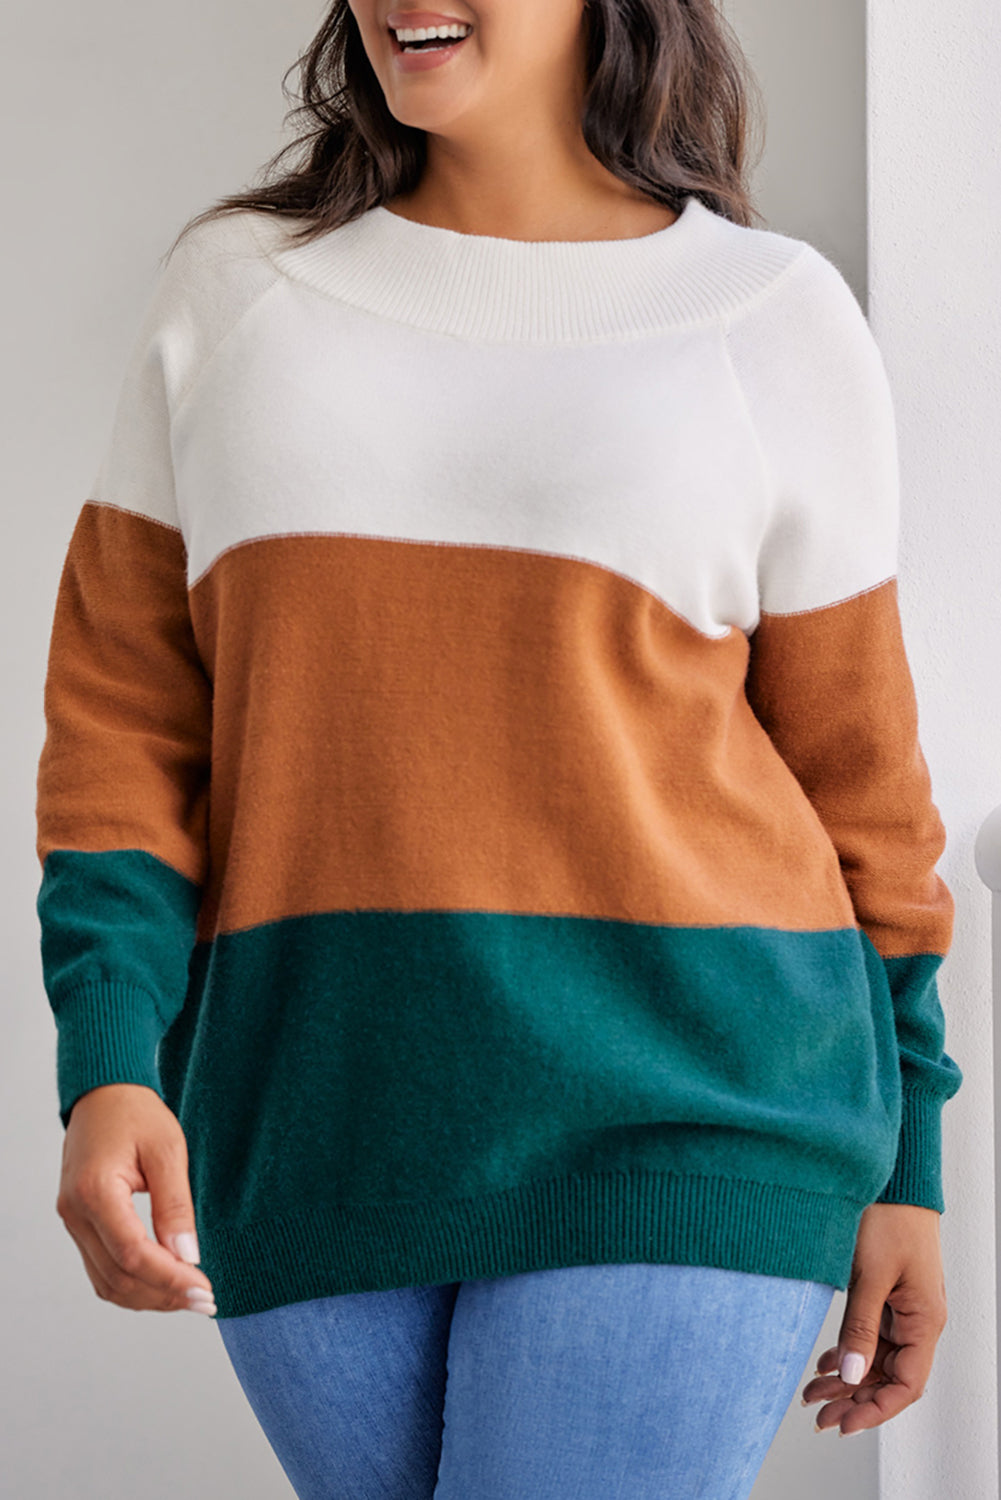 Brauner Plus-Size-Pullover mit geripptem Besatz und Farbblockdesign